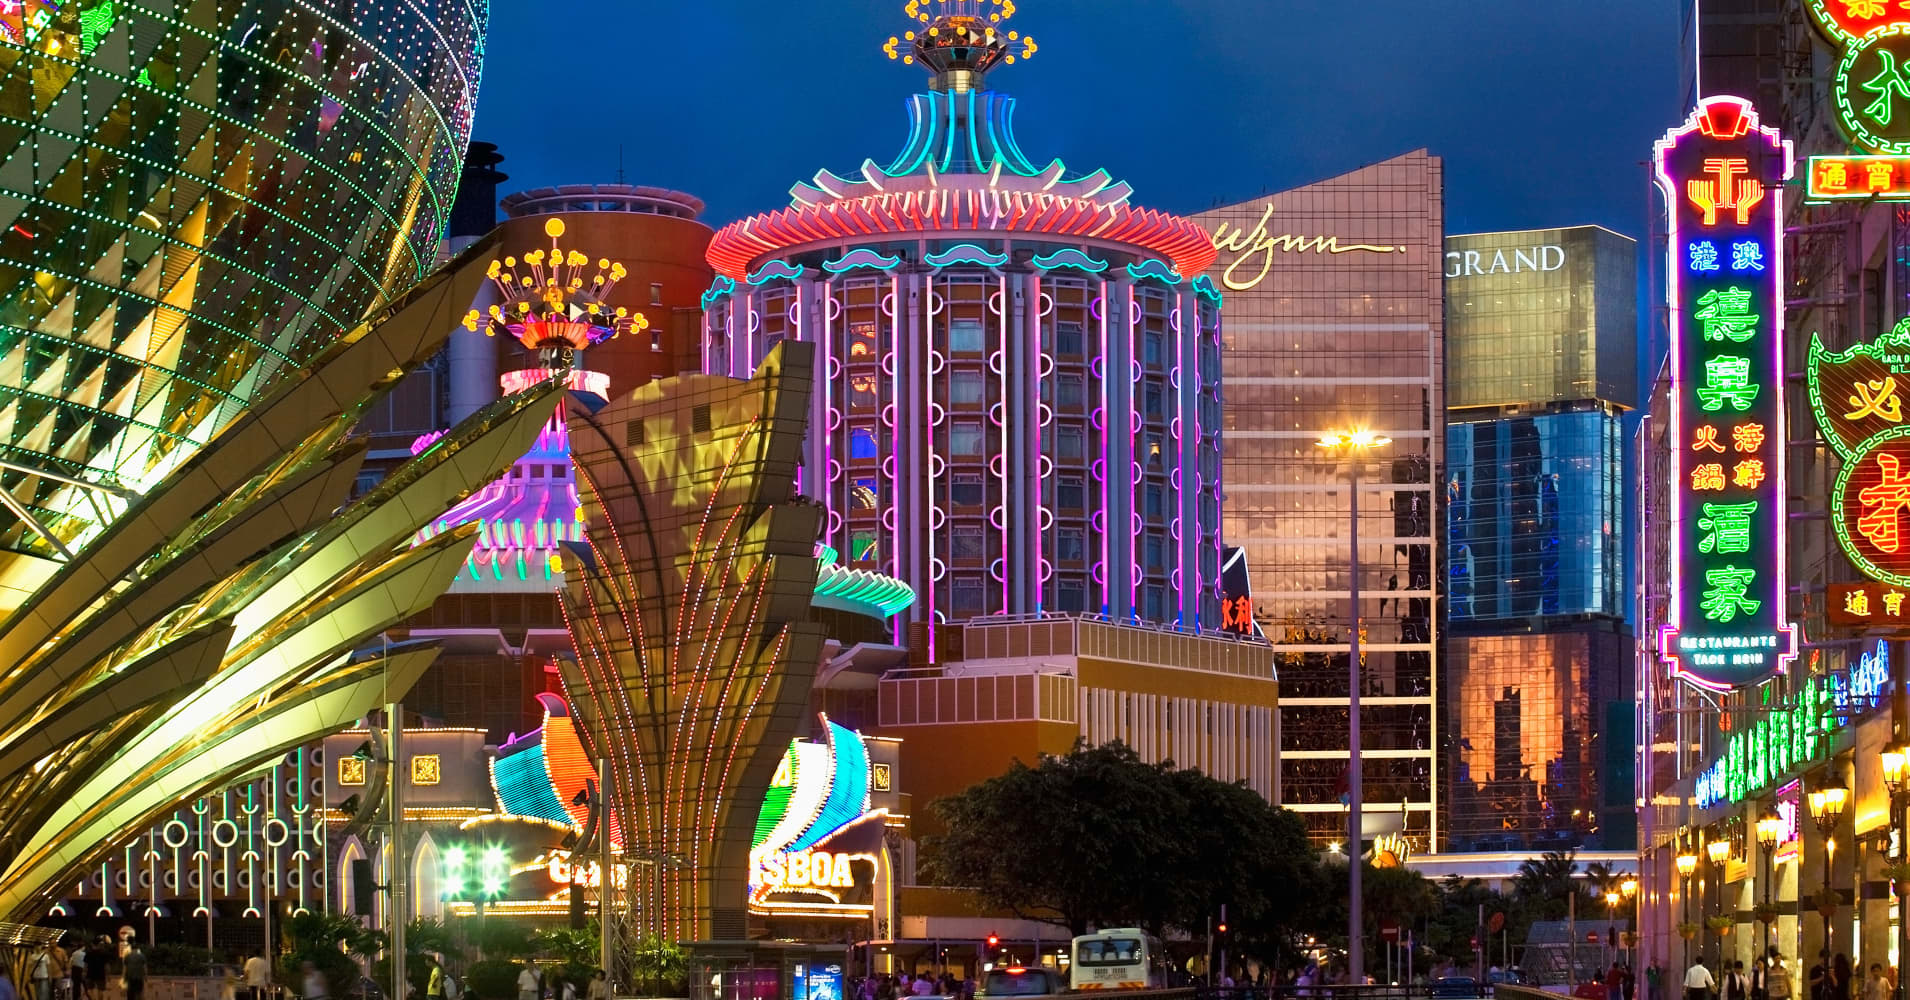 Macau Casino Shows